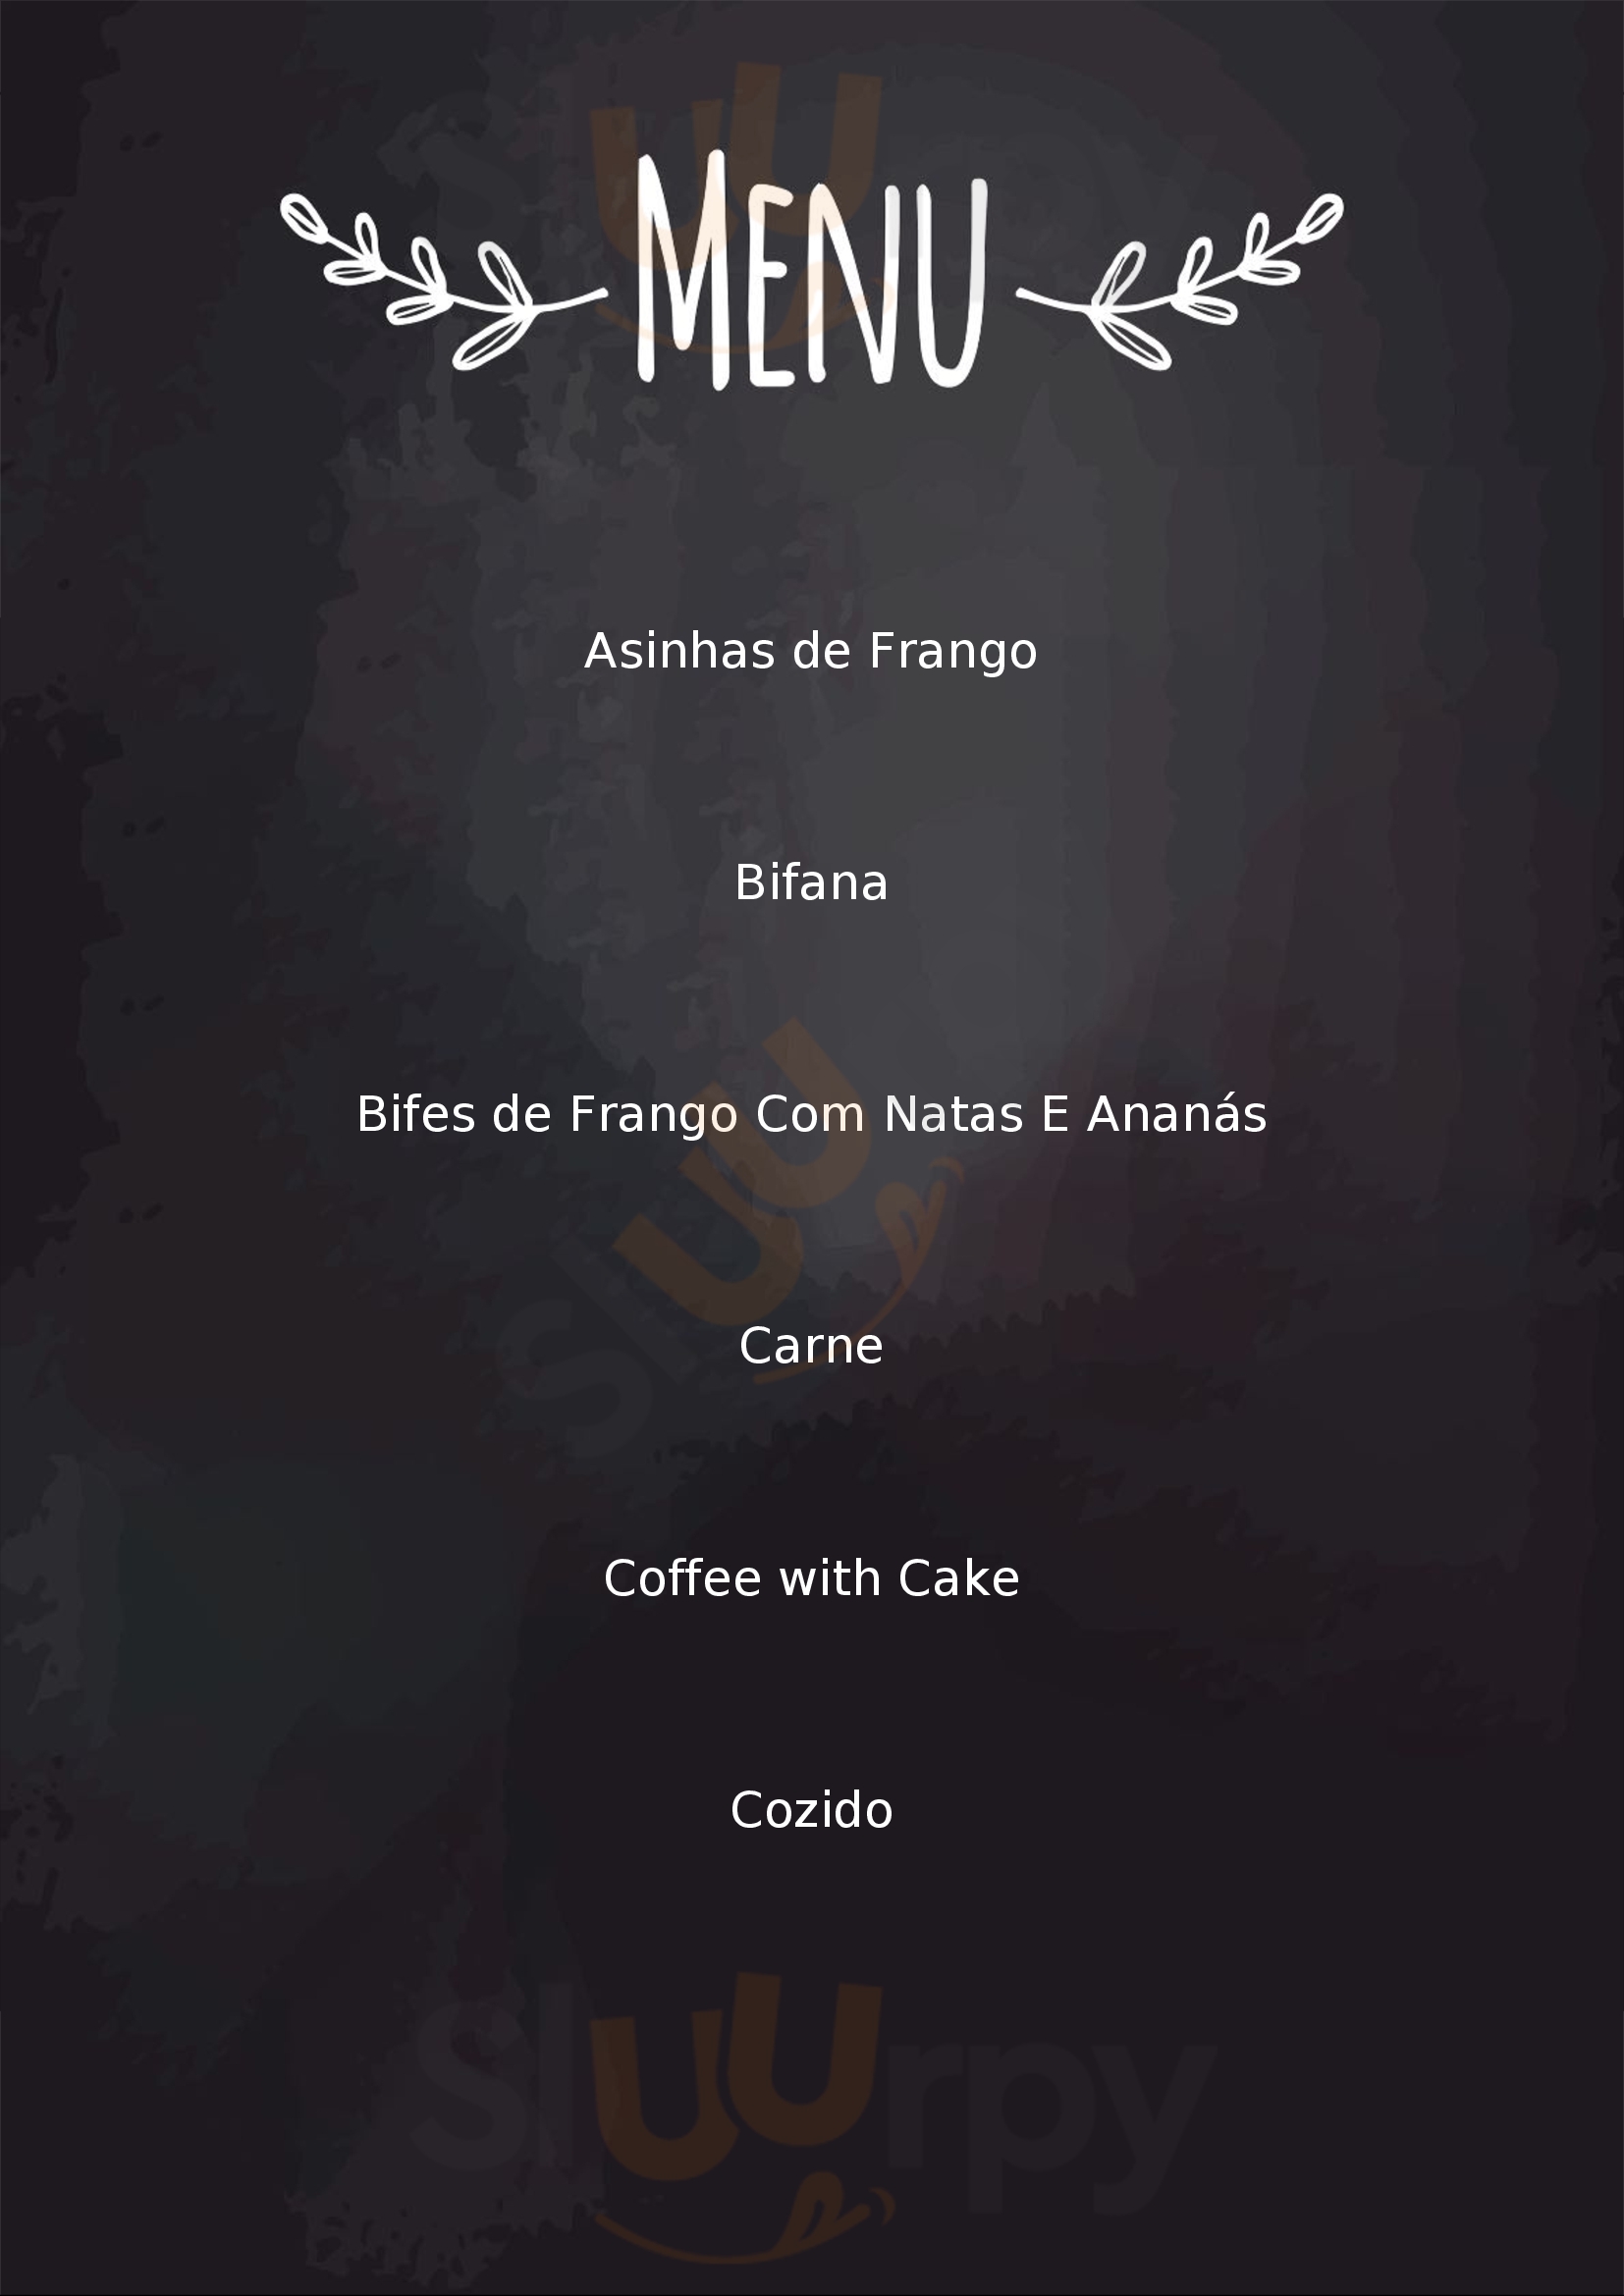 Restaurante Snack-bar Arco-Íris Pico Menu - 1